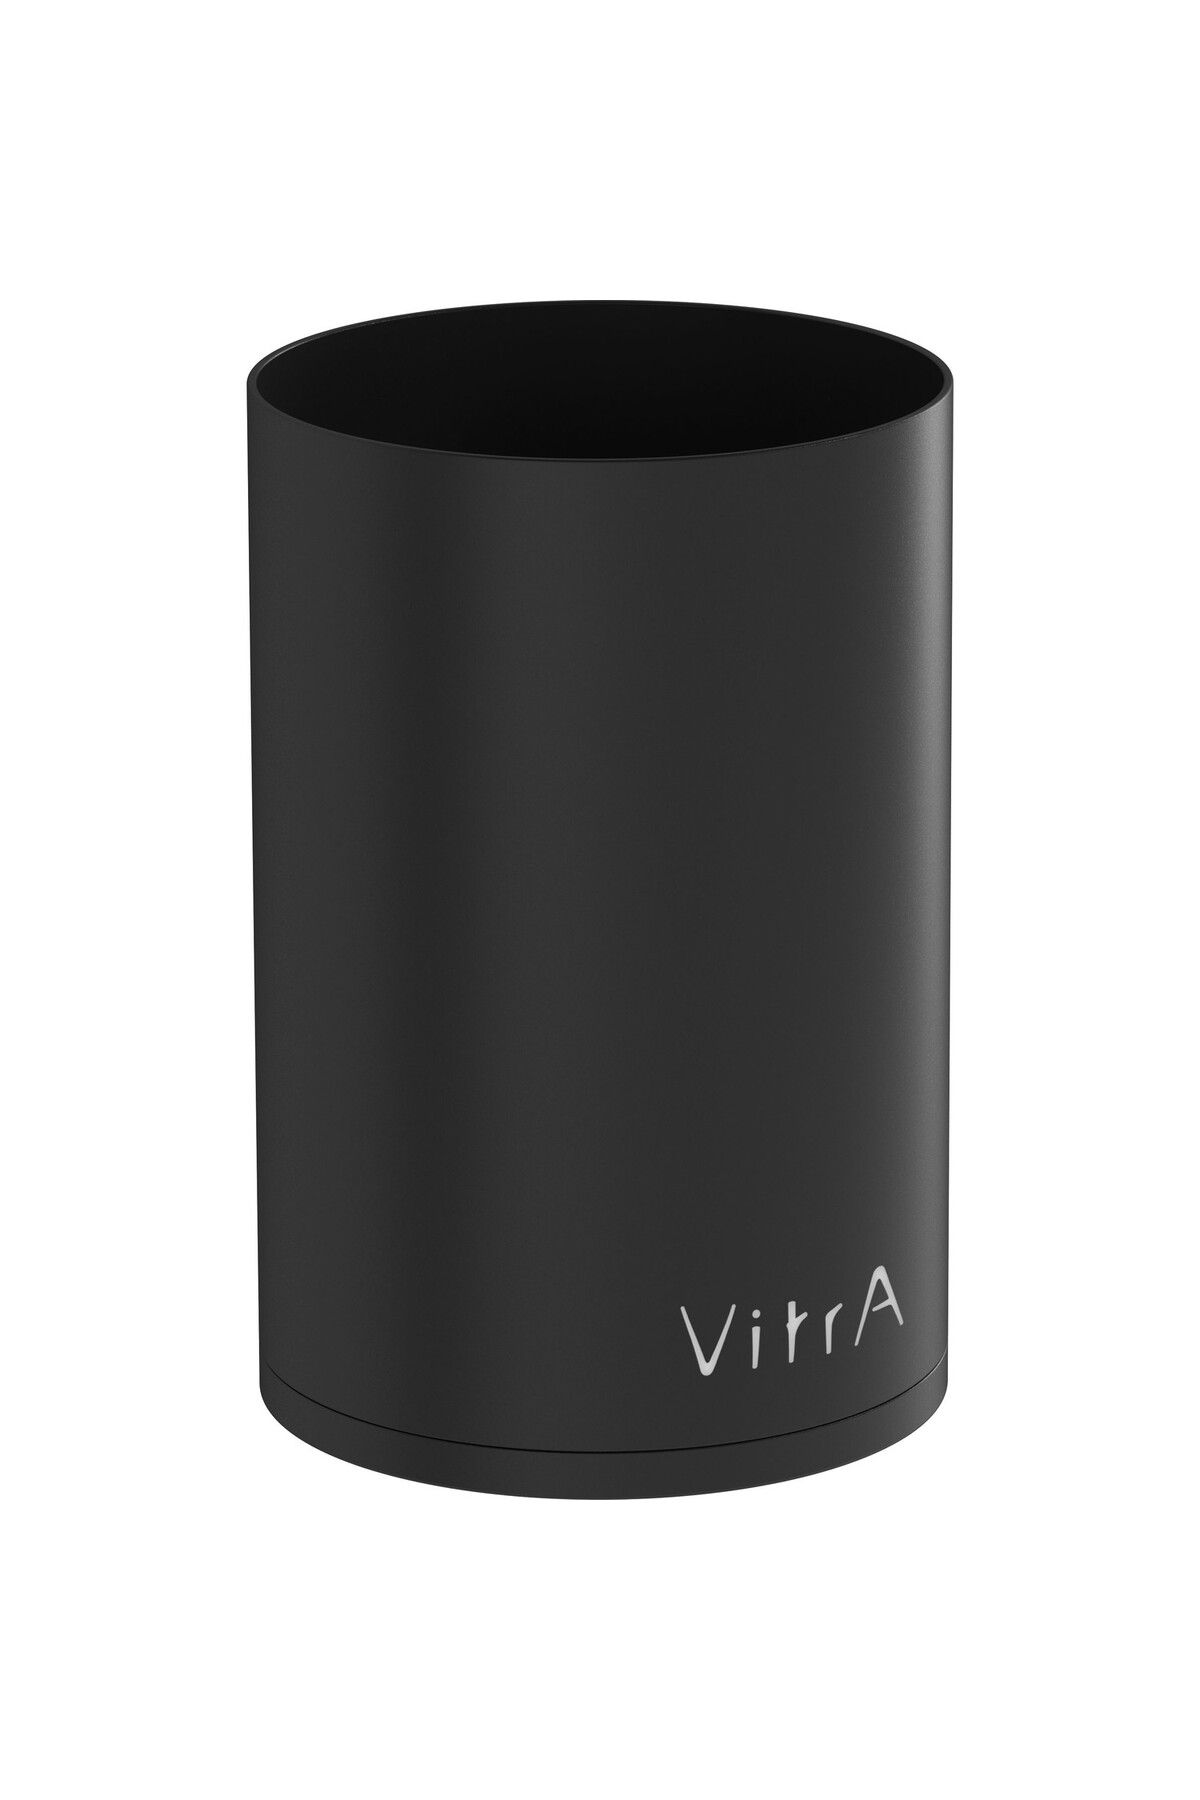 VitrA Origin A4488936 Yerden Diş Fırçalığı Siyah